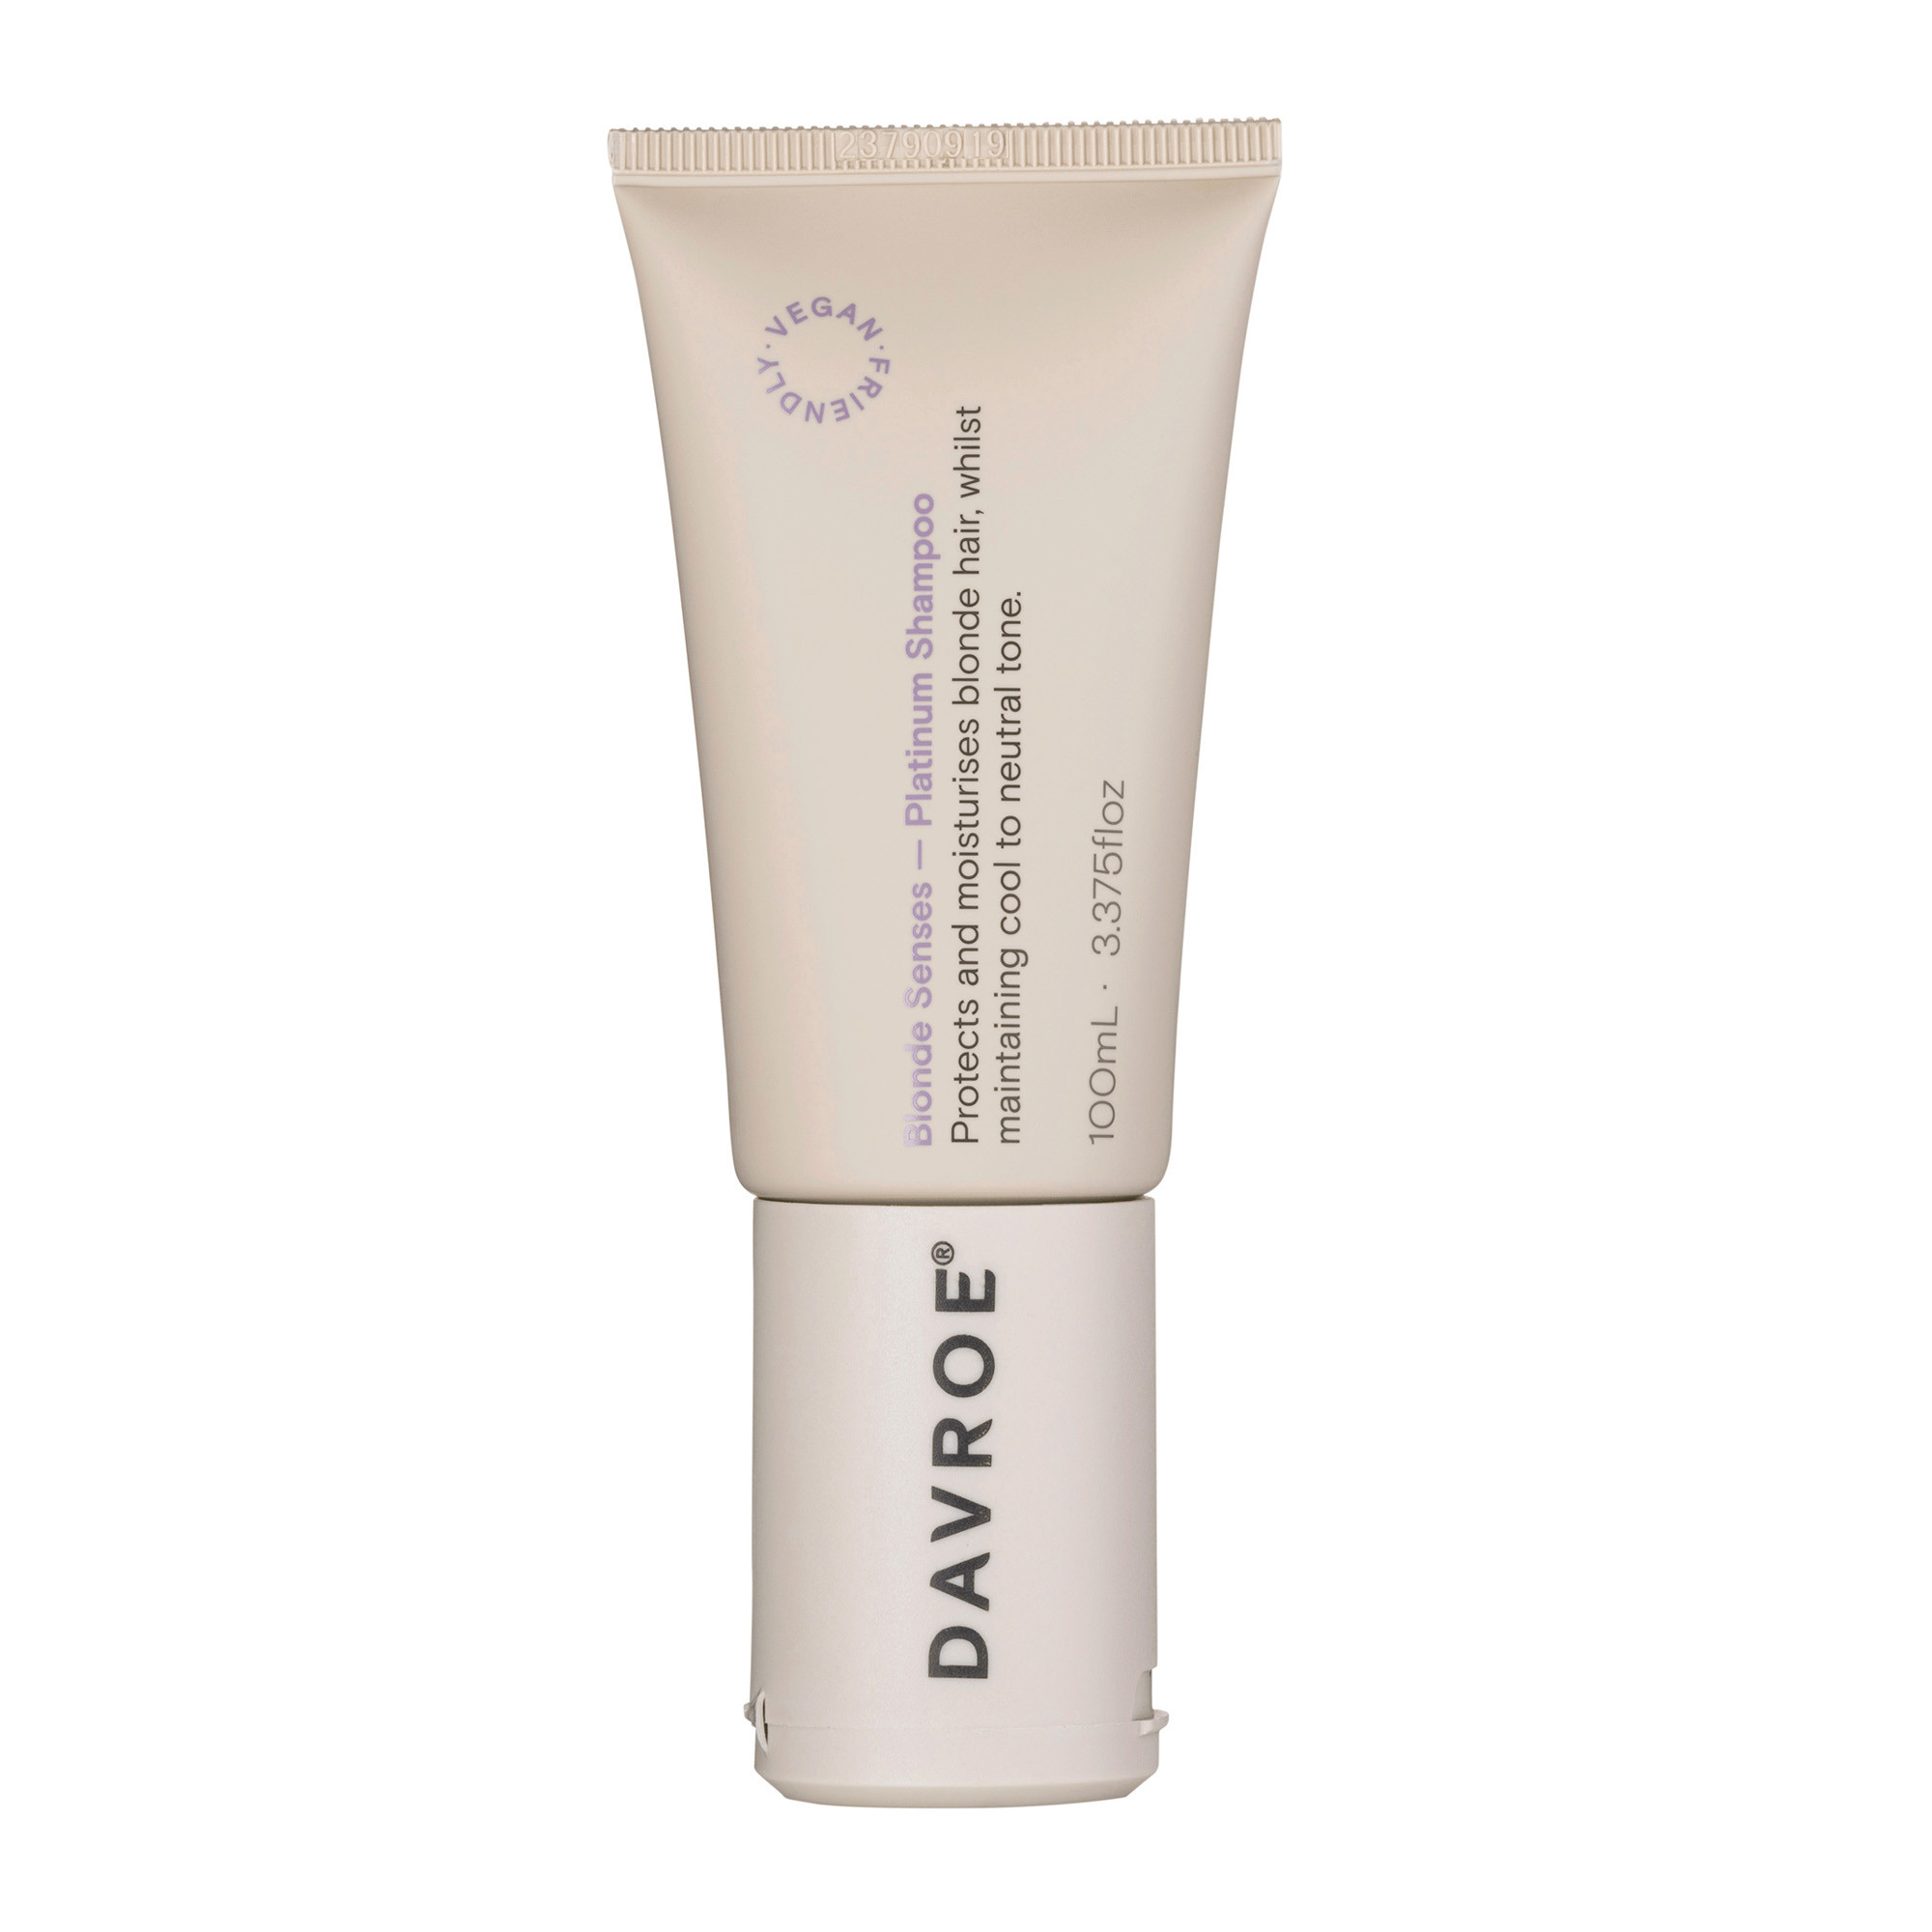 Davroe Blonde Toning Shampoo - Тонизирующий шампунь для светлых волос 